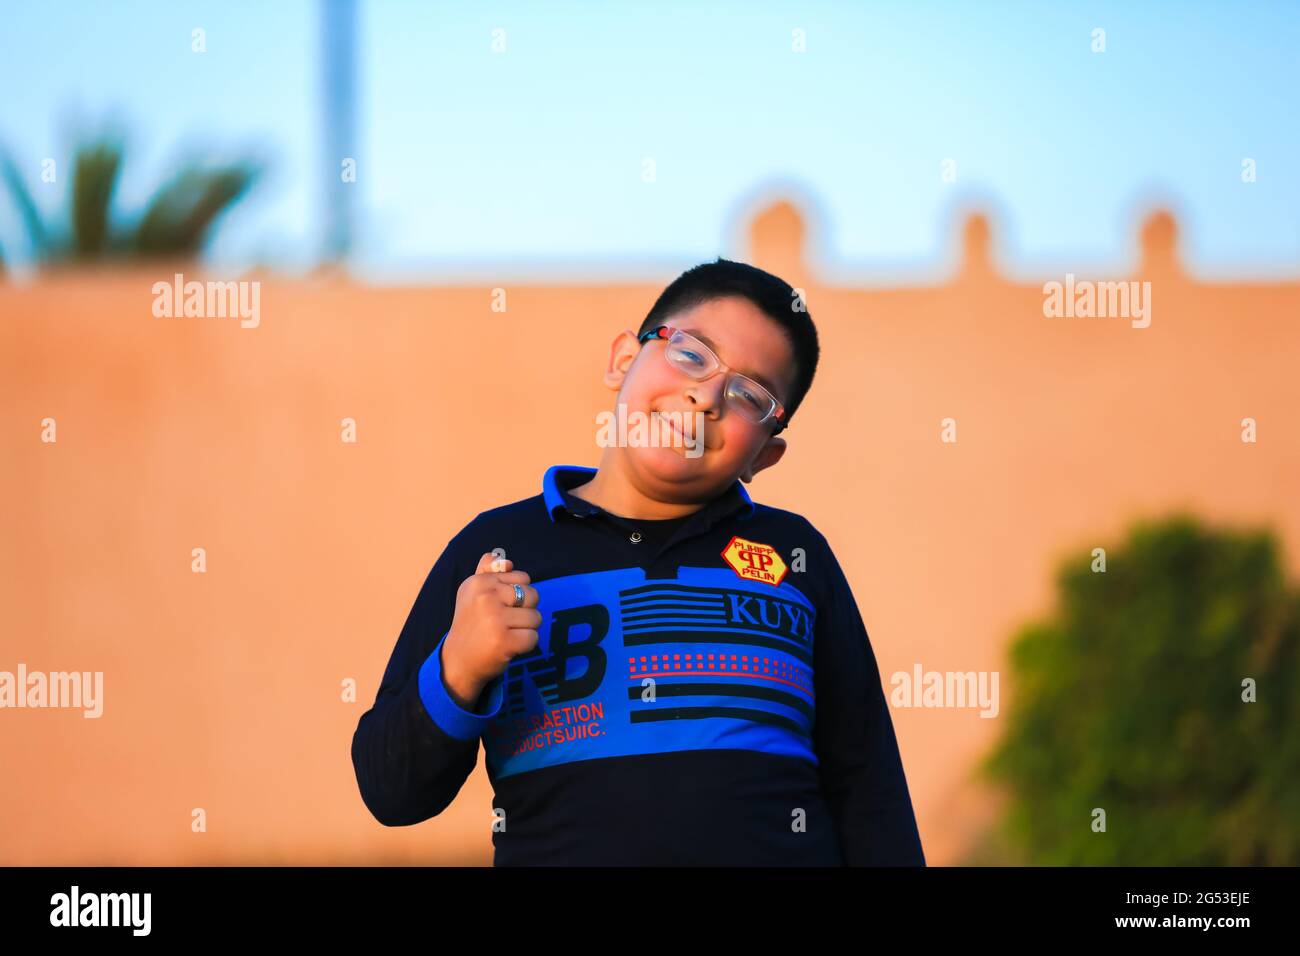 Marrakech, Morocco - 03 MAY 2021 : Moroccan young boy posing  in Marrakech city Stock Photo